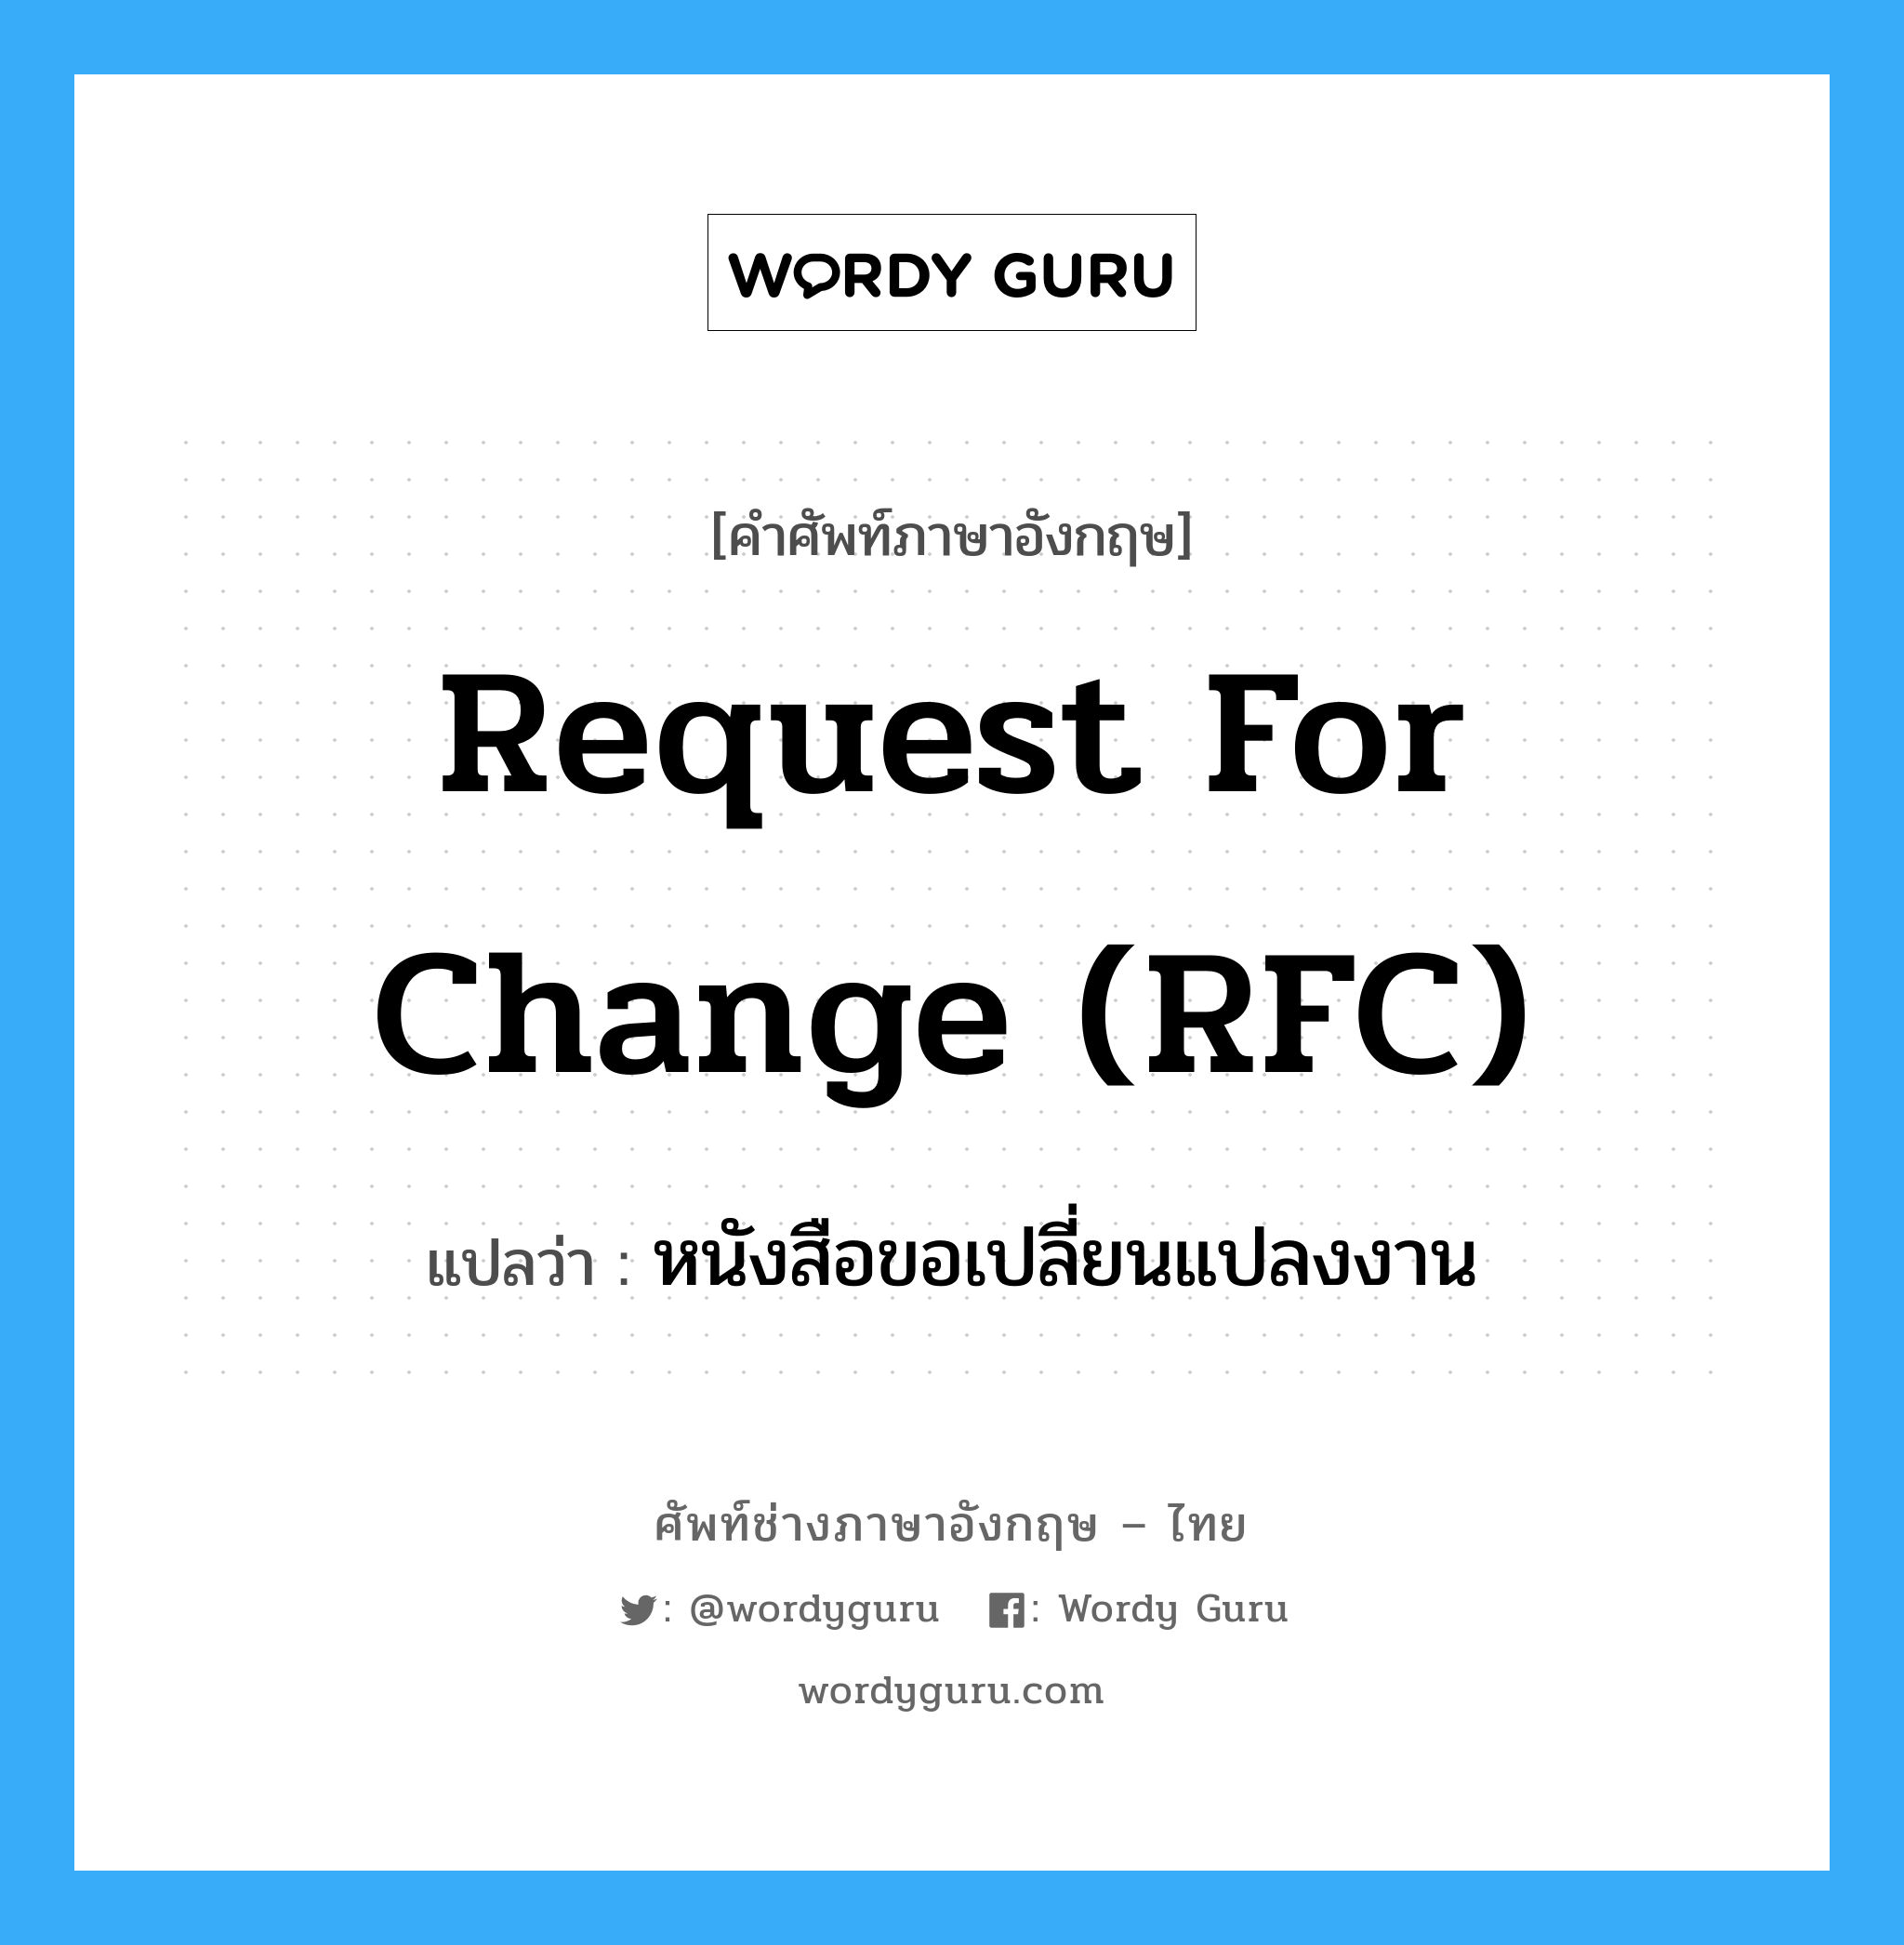 Request for Change (RFC) แปลว่า?, คำศัพท์ช่างภาษาอังกฤษ - ไทย Request for Change (RFC) คำศัพท์ภาษาอังกฤษ Request for Change (RFC) แปลว่า หนังสือขอเปลี่ยนแปลงงาน